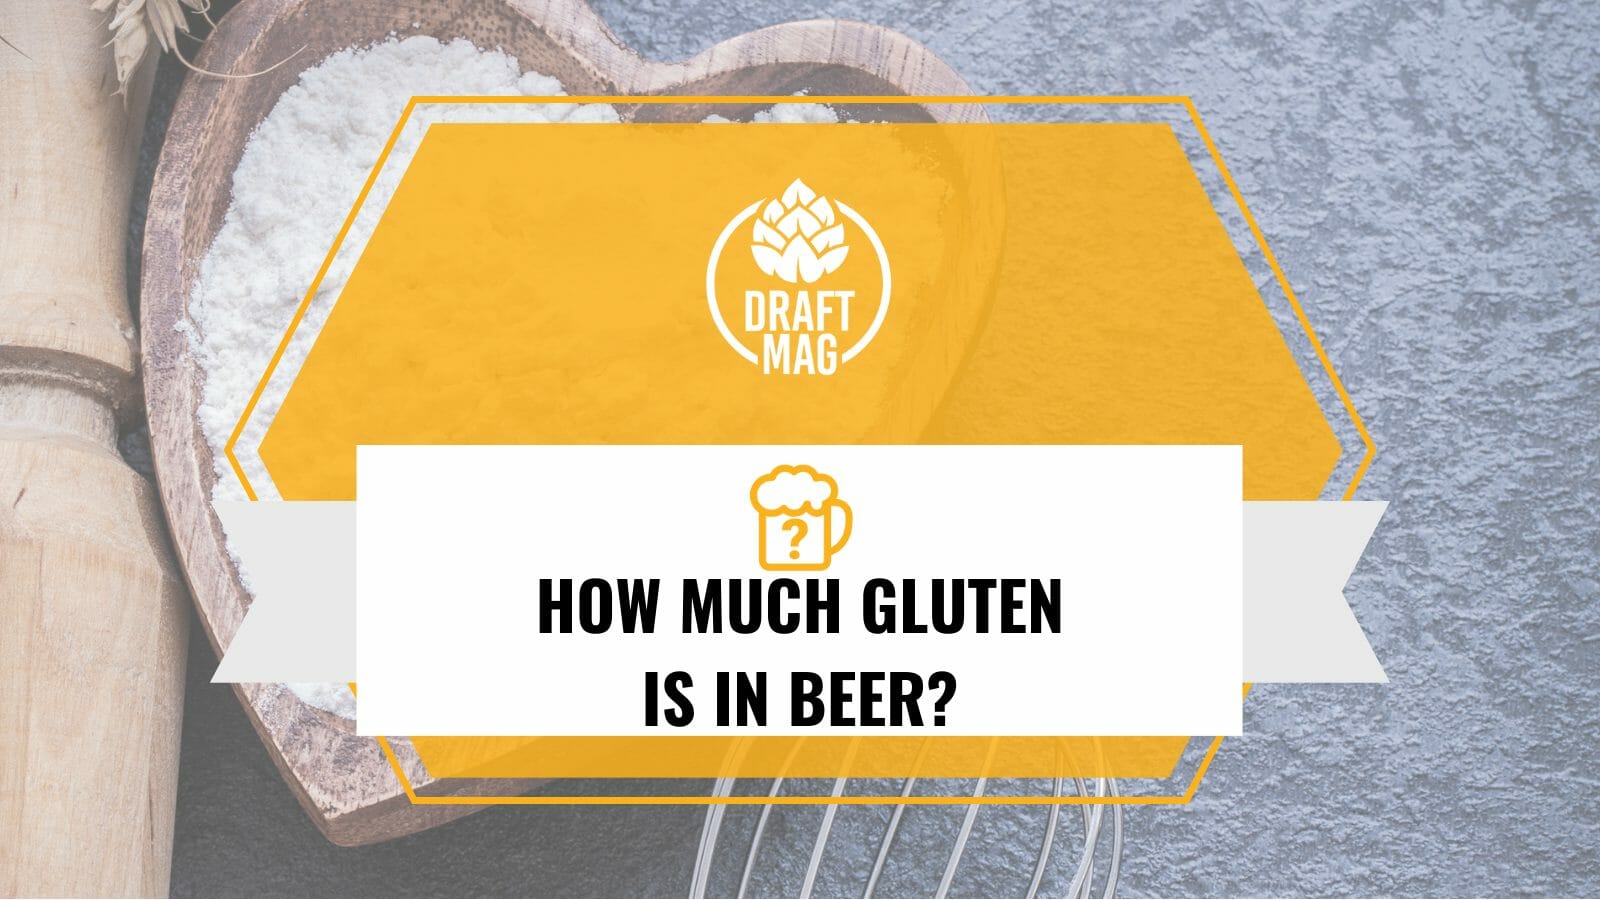 How much gluten is in beer